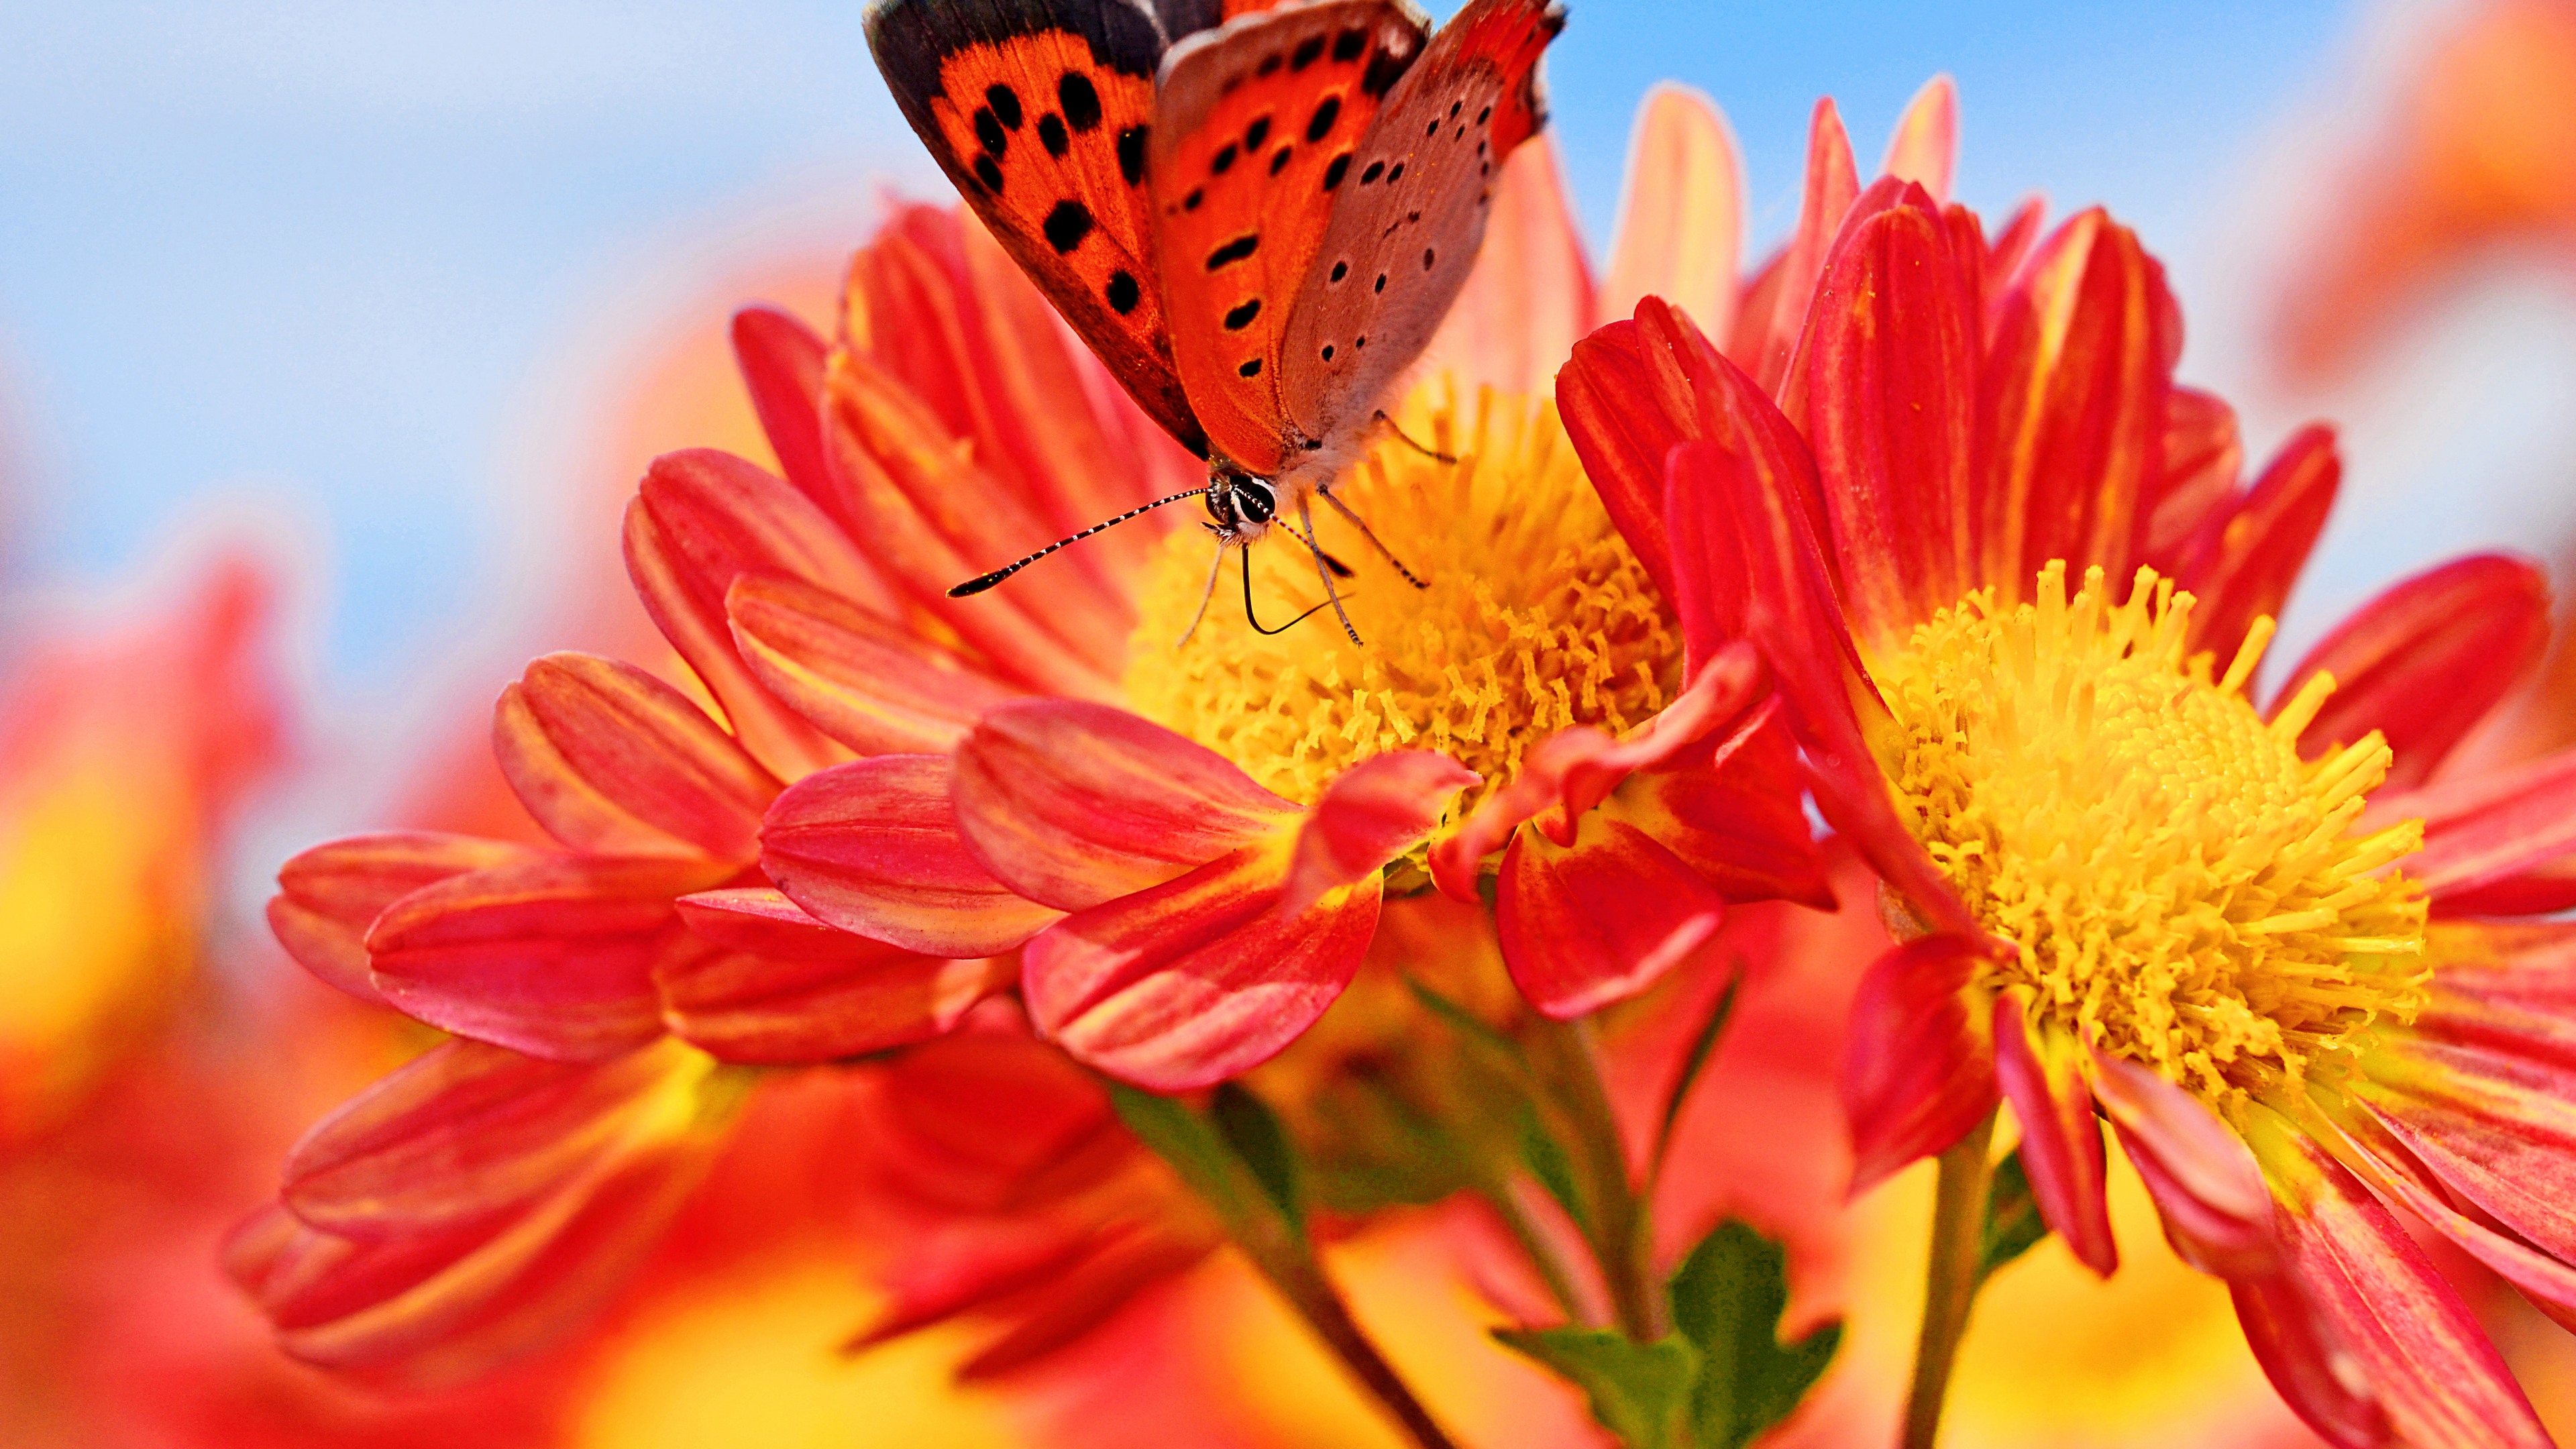 تصویر بینظیر و دلنشین از پروانه ی نارنجی روی گل های خوشرنگ